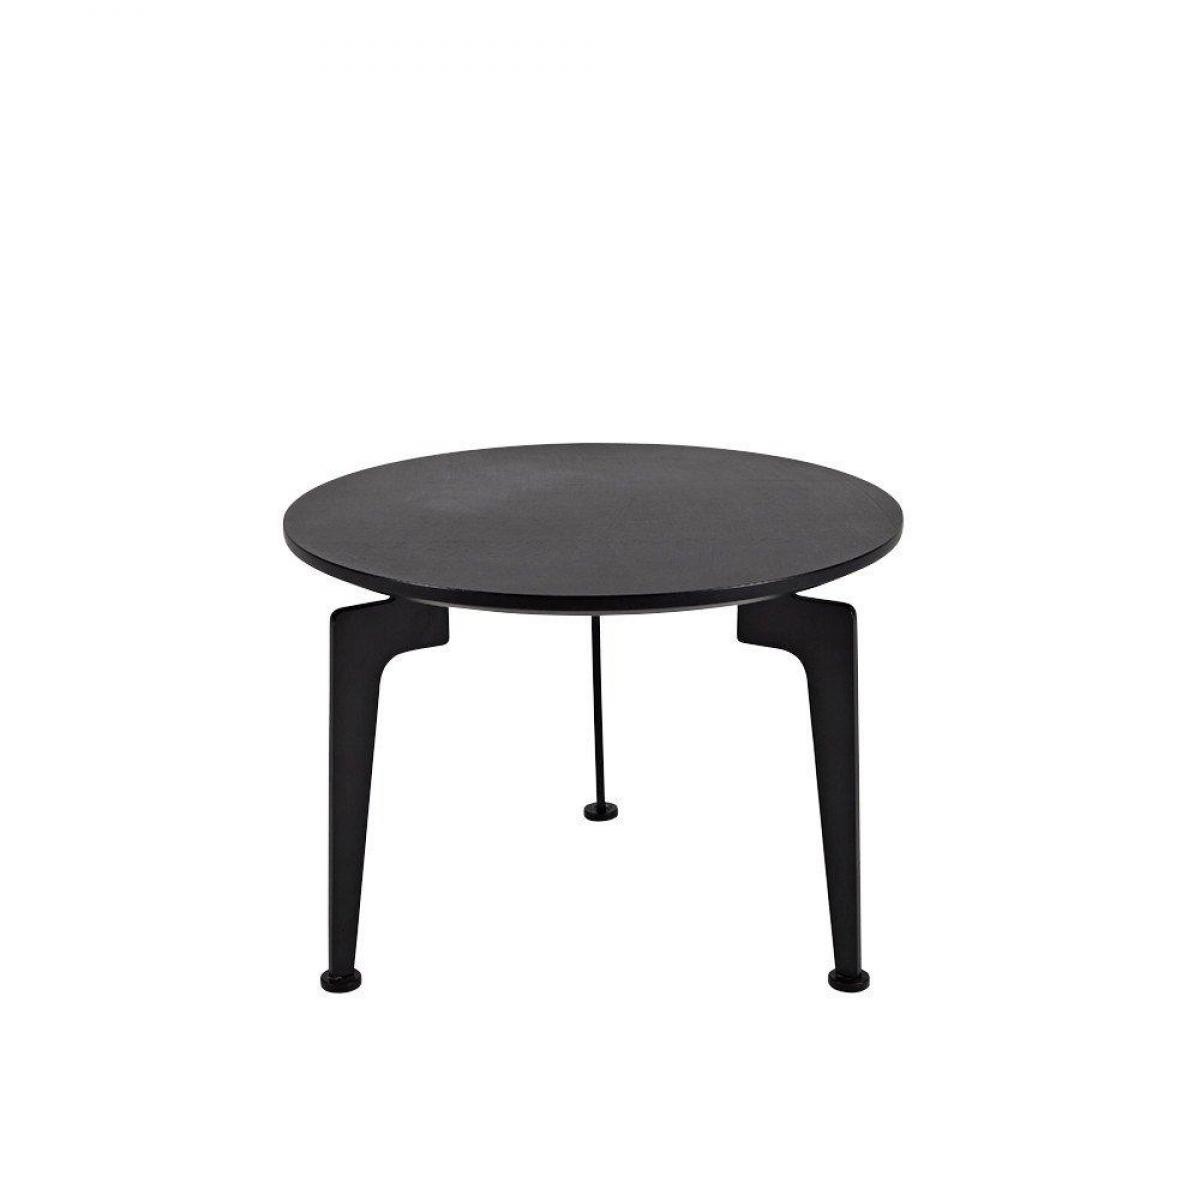 Inside 75 - INNOVATION LIVING Table basse design scandinave LASER taille M noire - Tables à manger